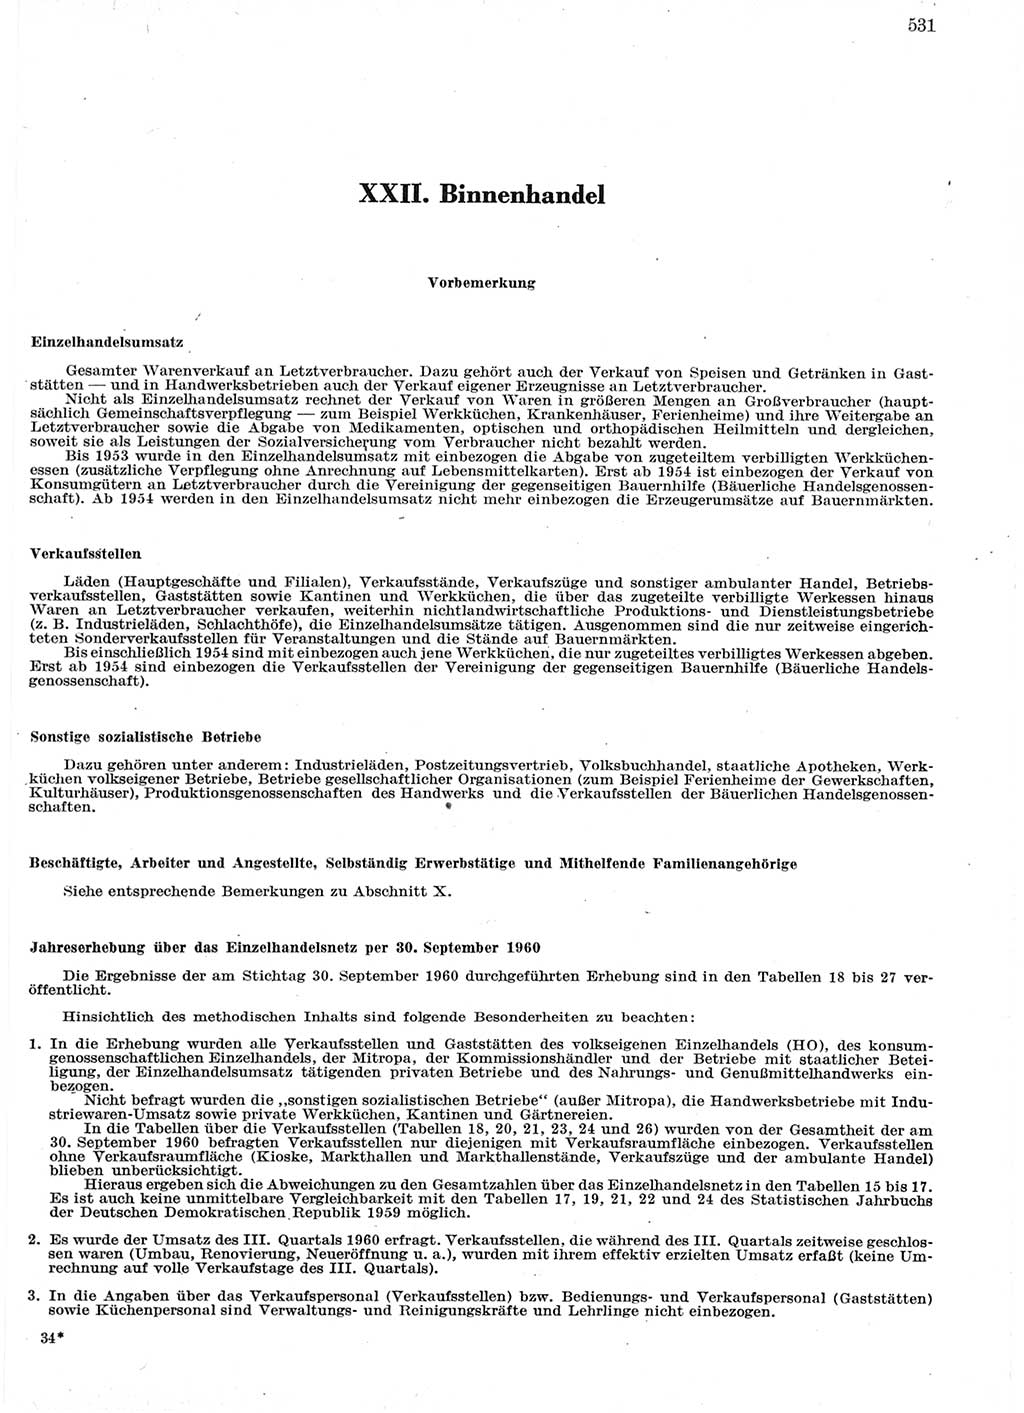 Statistisches Jahrbuch der Deutschen Demokratischen Republik (DDR) 1960-1961, Seite 531 (Stat. Jb. DDR 1960-1961, S. 531)